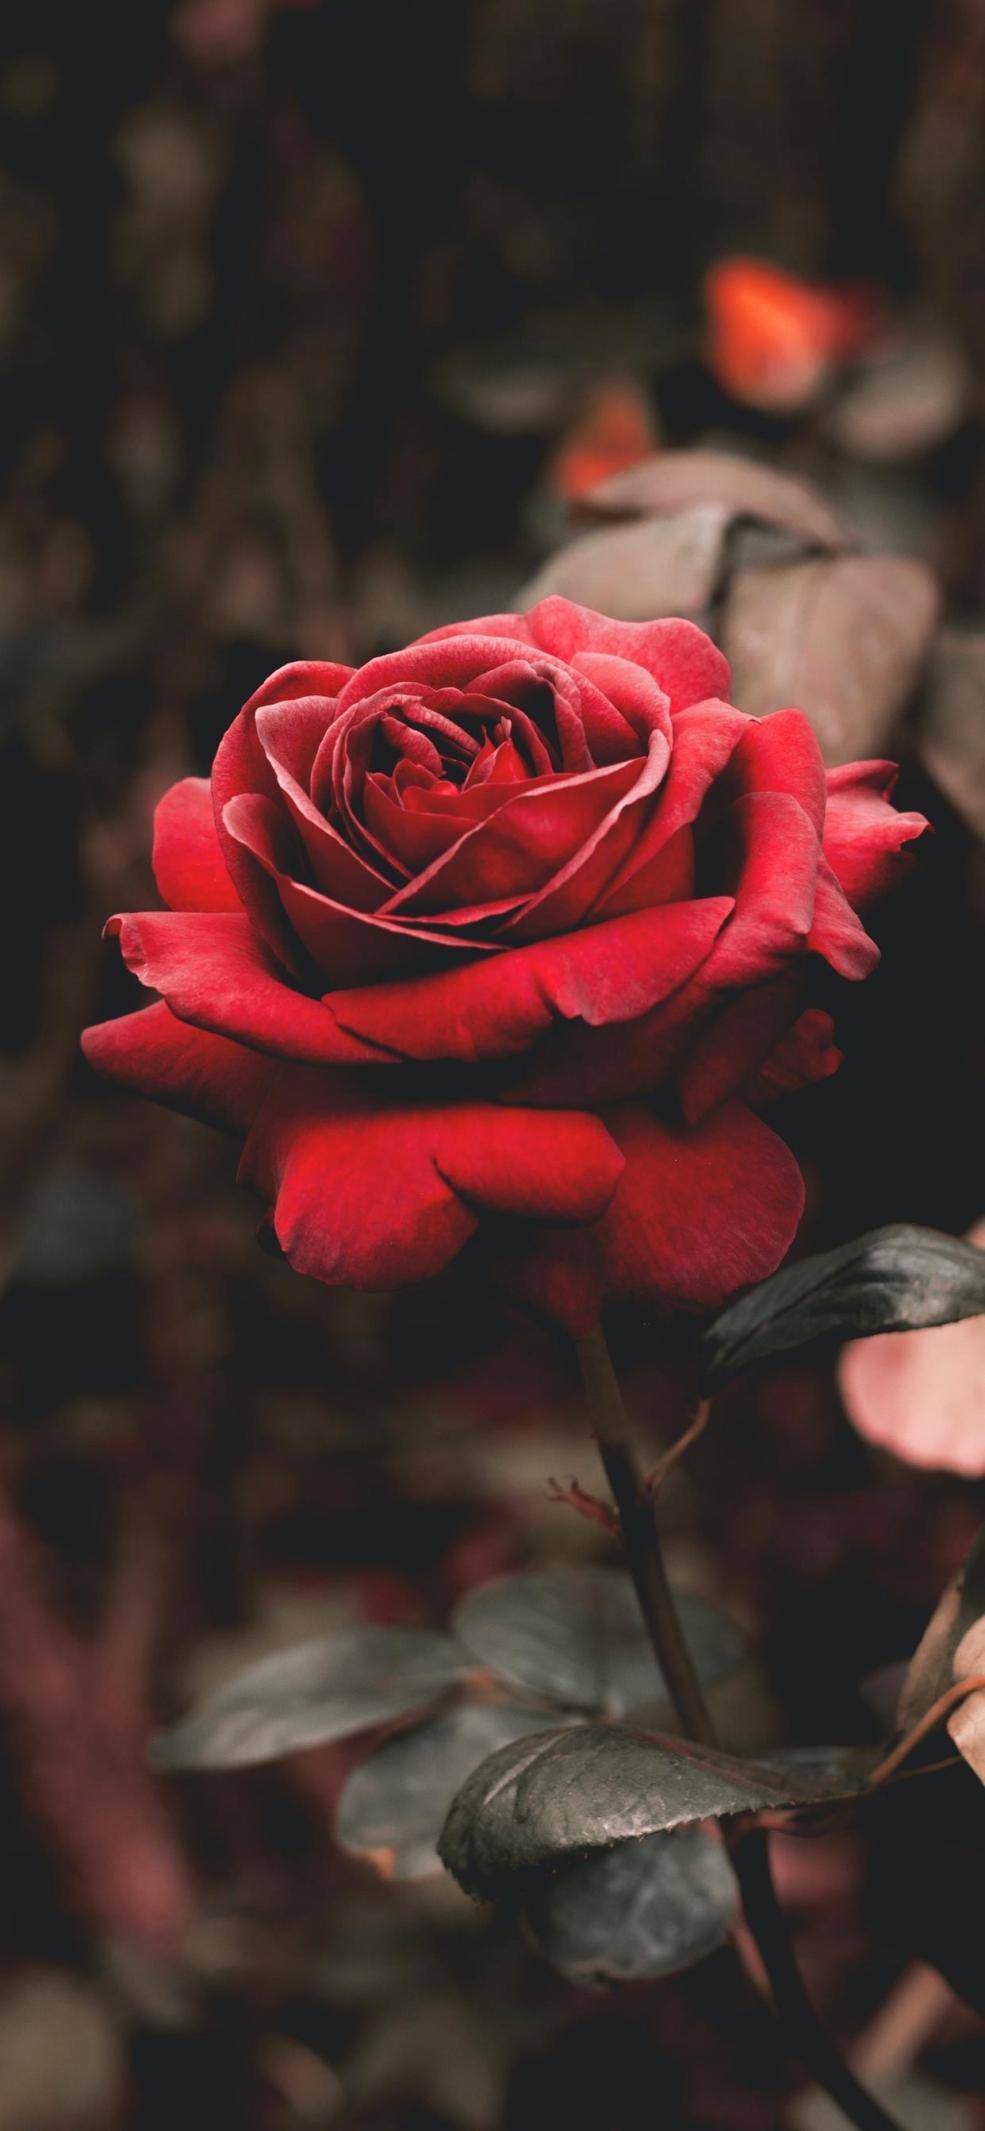 玫瑰花的枯萎是爱情的终结,亦是美的开始